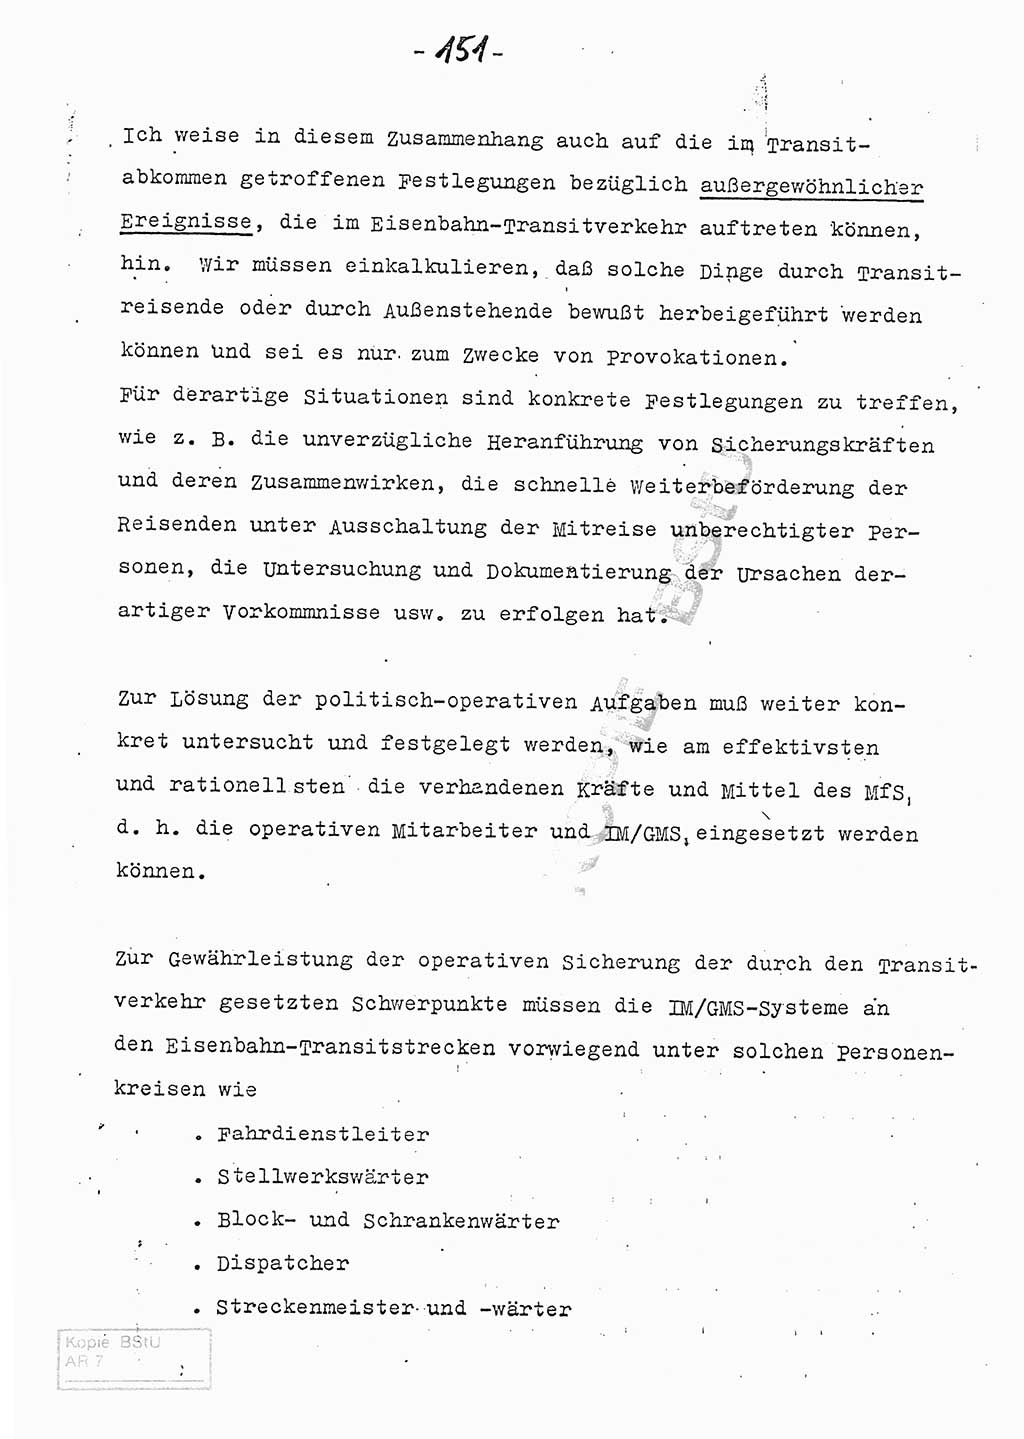 Referat (Entwurf) des Genossen Minister (Generaloberst Erich Mielke) auf der Dienstkonferenz 1972, Ministerium für Staatssicherheit (MfS) [Deutsche Demokratische Republik (DDR)], Der Minister, Geheime Verschlußsache (GVS) 008-150/72, Berlin 25.2.1972, Seite 151 (Ref. Entw. DK MfS DDR Min. GVS 008-150/72 1972, S. 151)